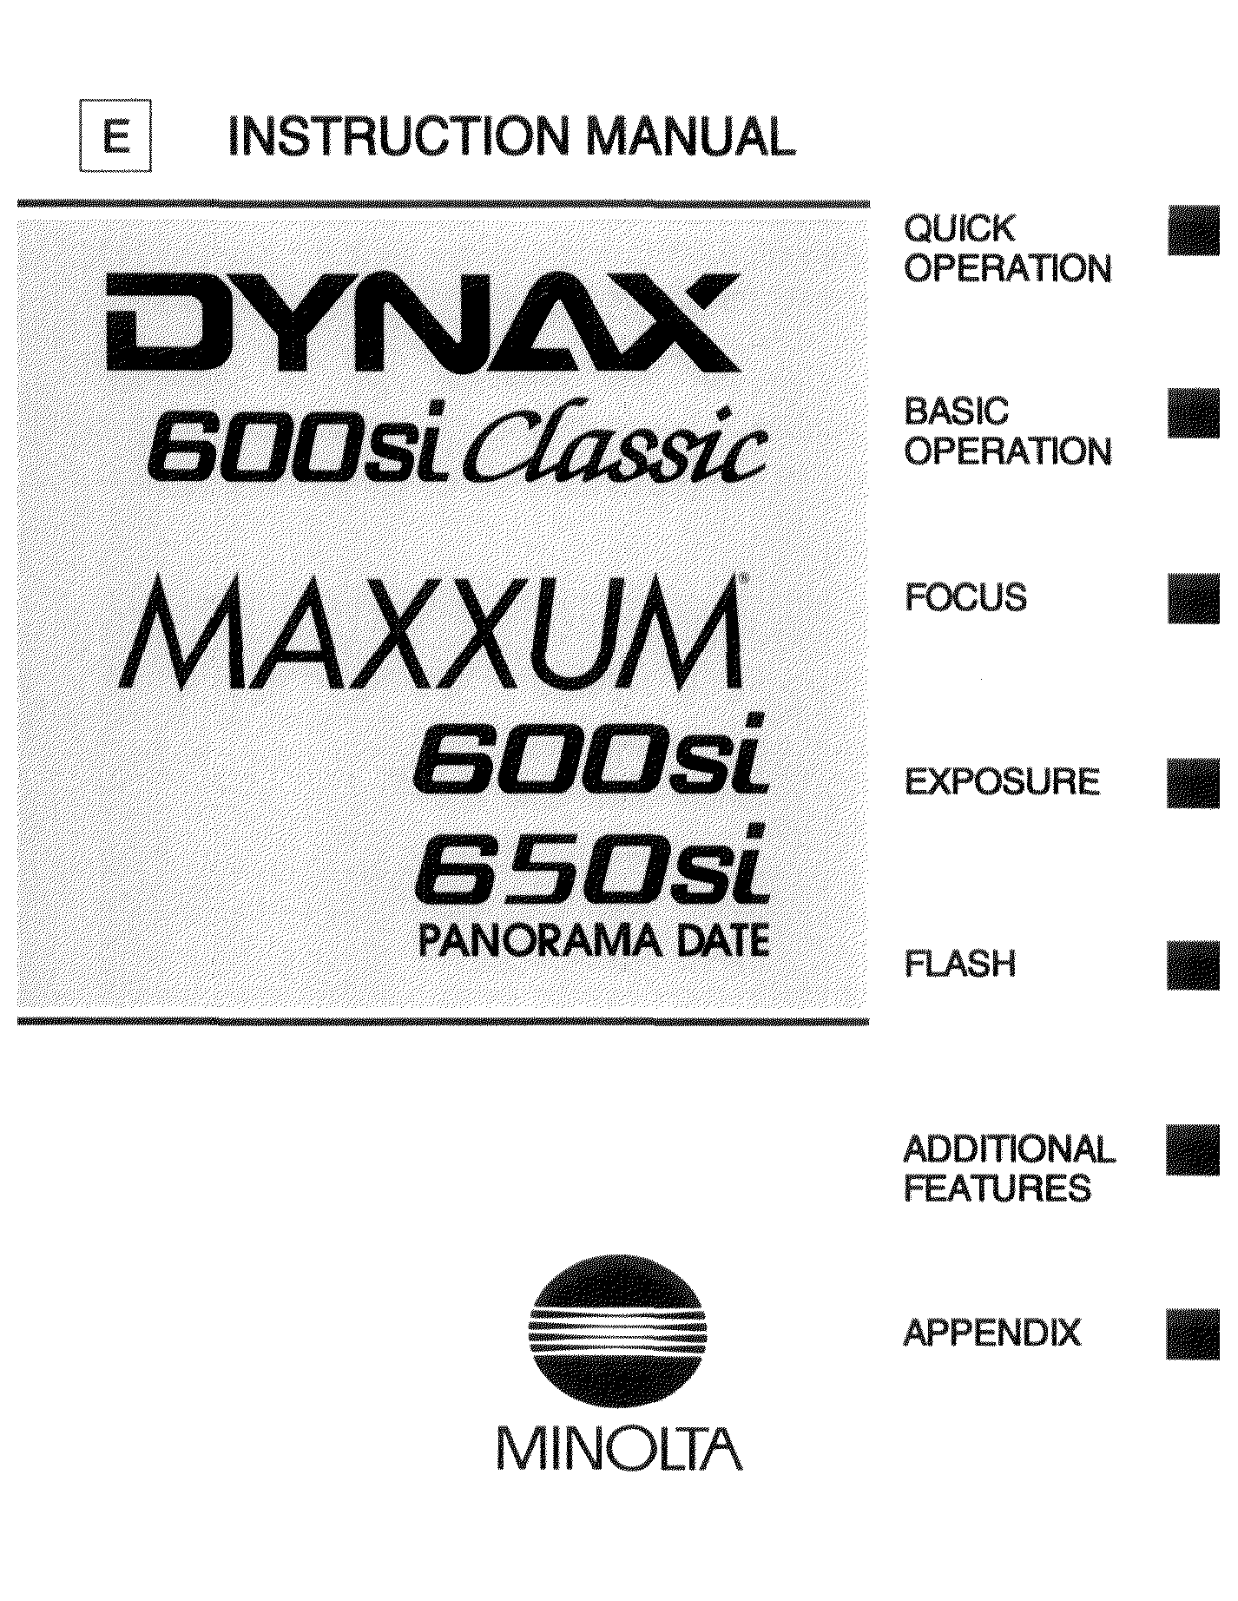 Konica Minolta DYNAX MAXXUM 600SI User Manual